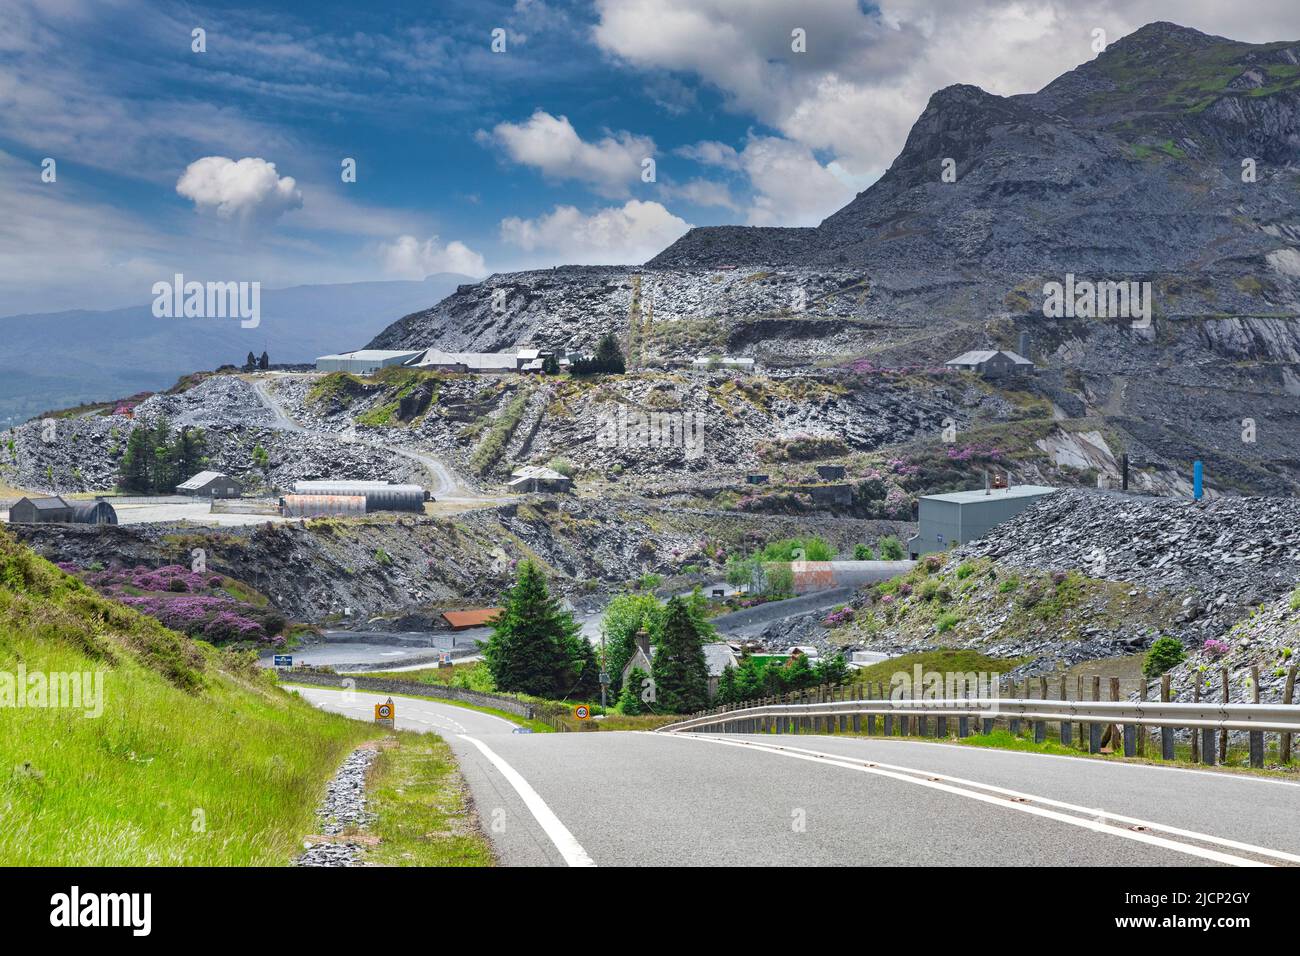 27 maggio 2019: Blaenau Ffestiniog, Gwynedd, Galles, Regno Unito - miniera di ardesia appartenente alla gallese Slate, l'unica miniera di ardesia ancora operativa nella città. Strada... Foto Stock